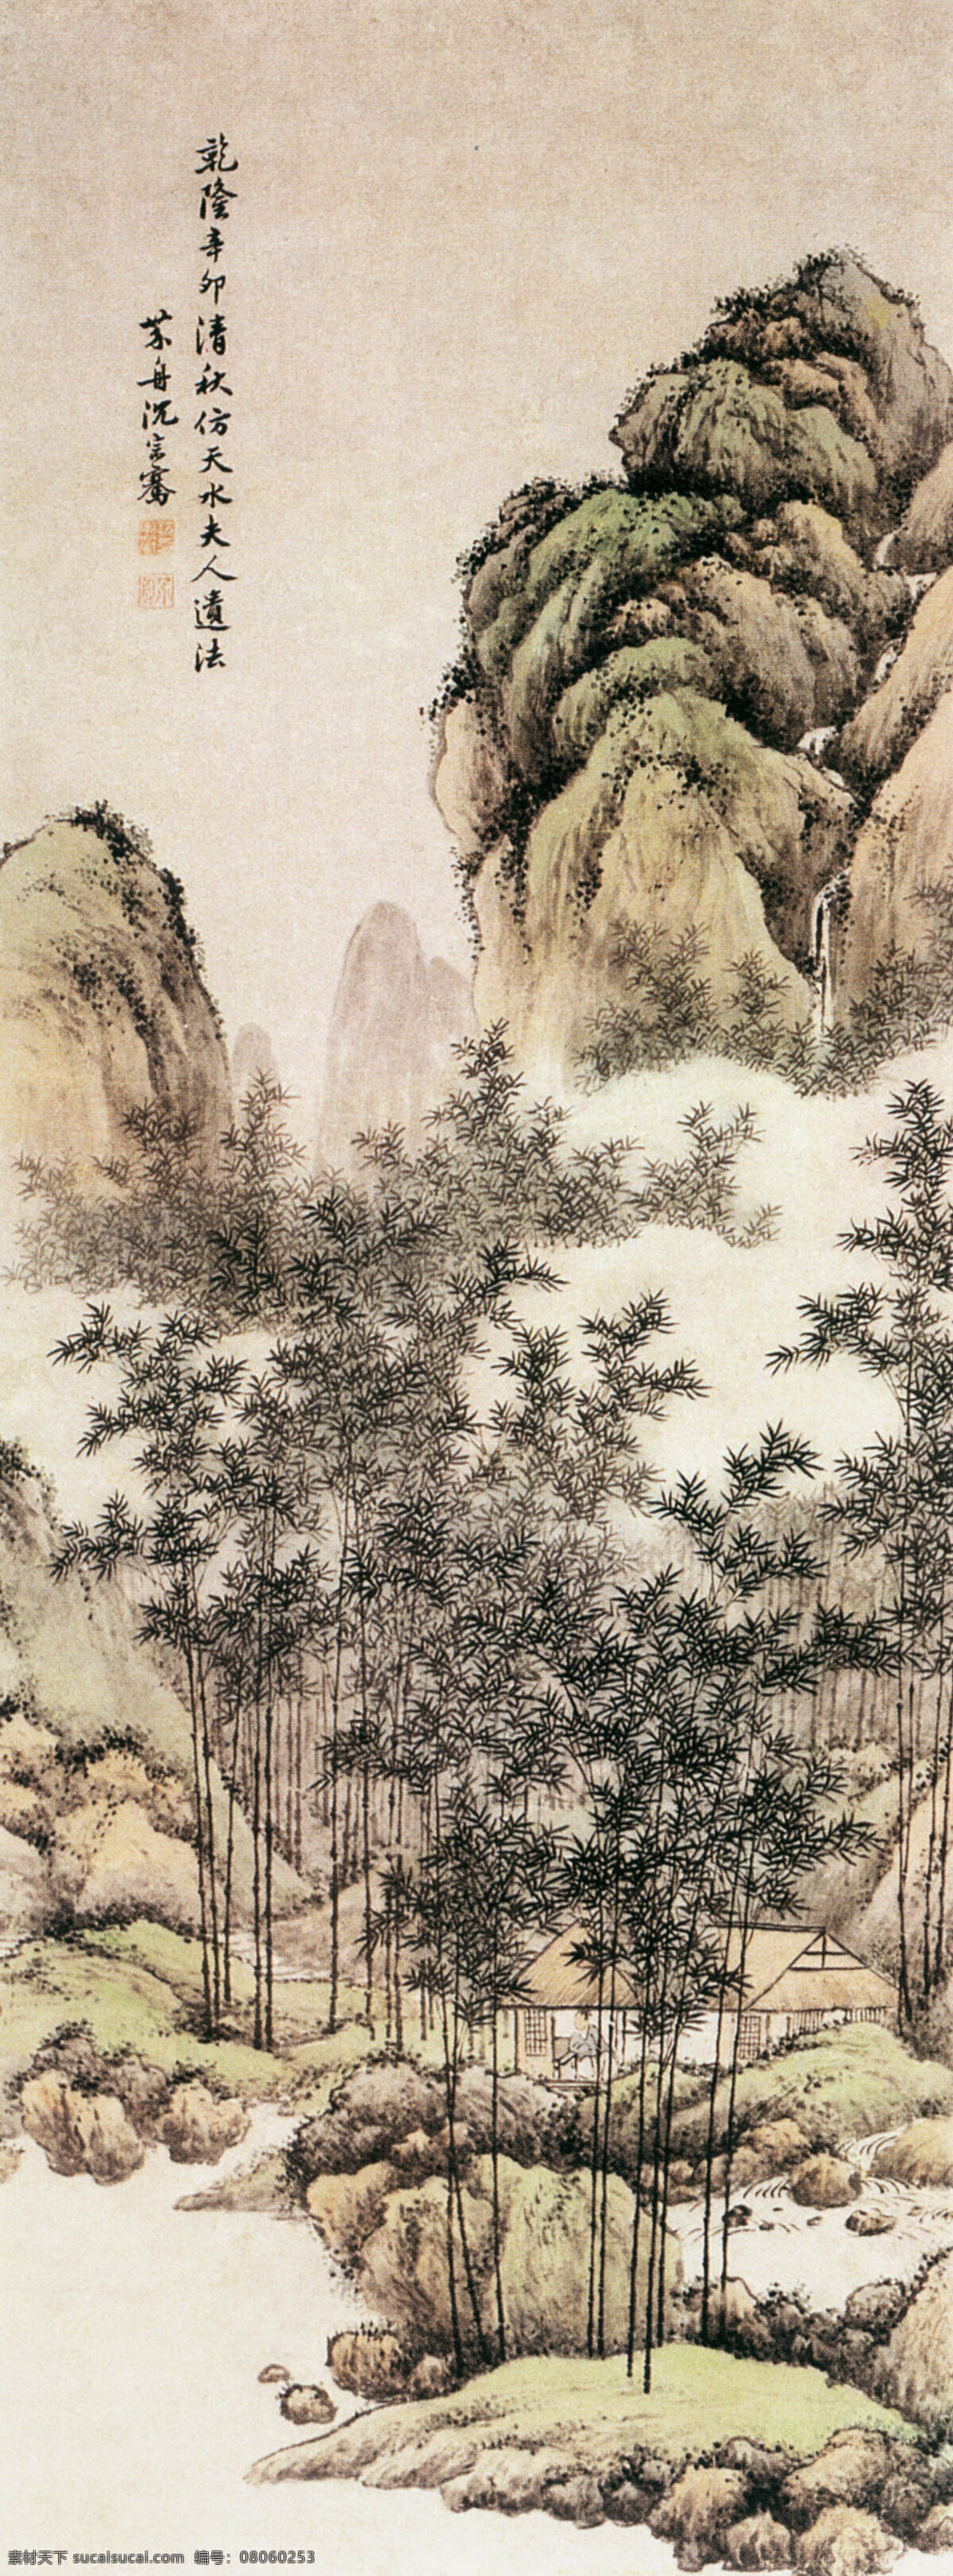 山水 房子 国画 绘画 水墨 中国画 文化艺术